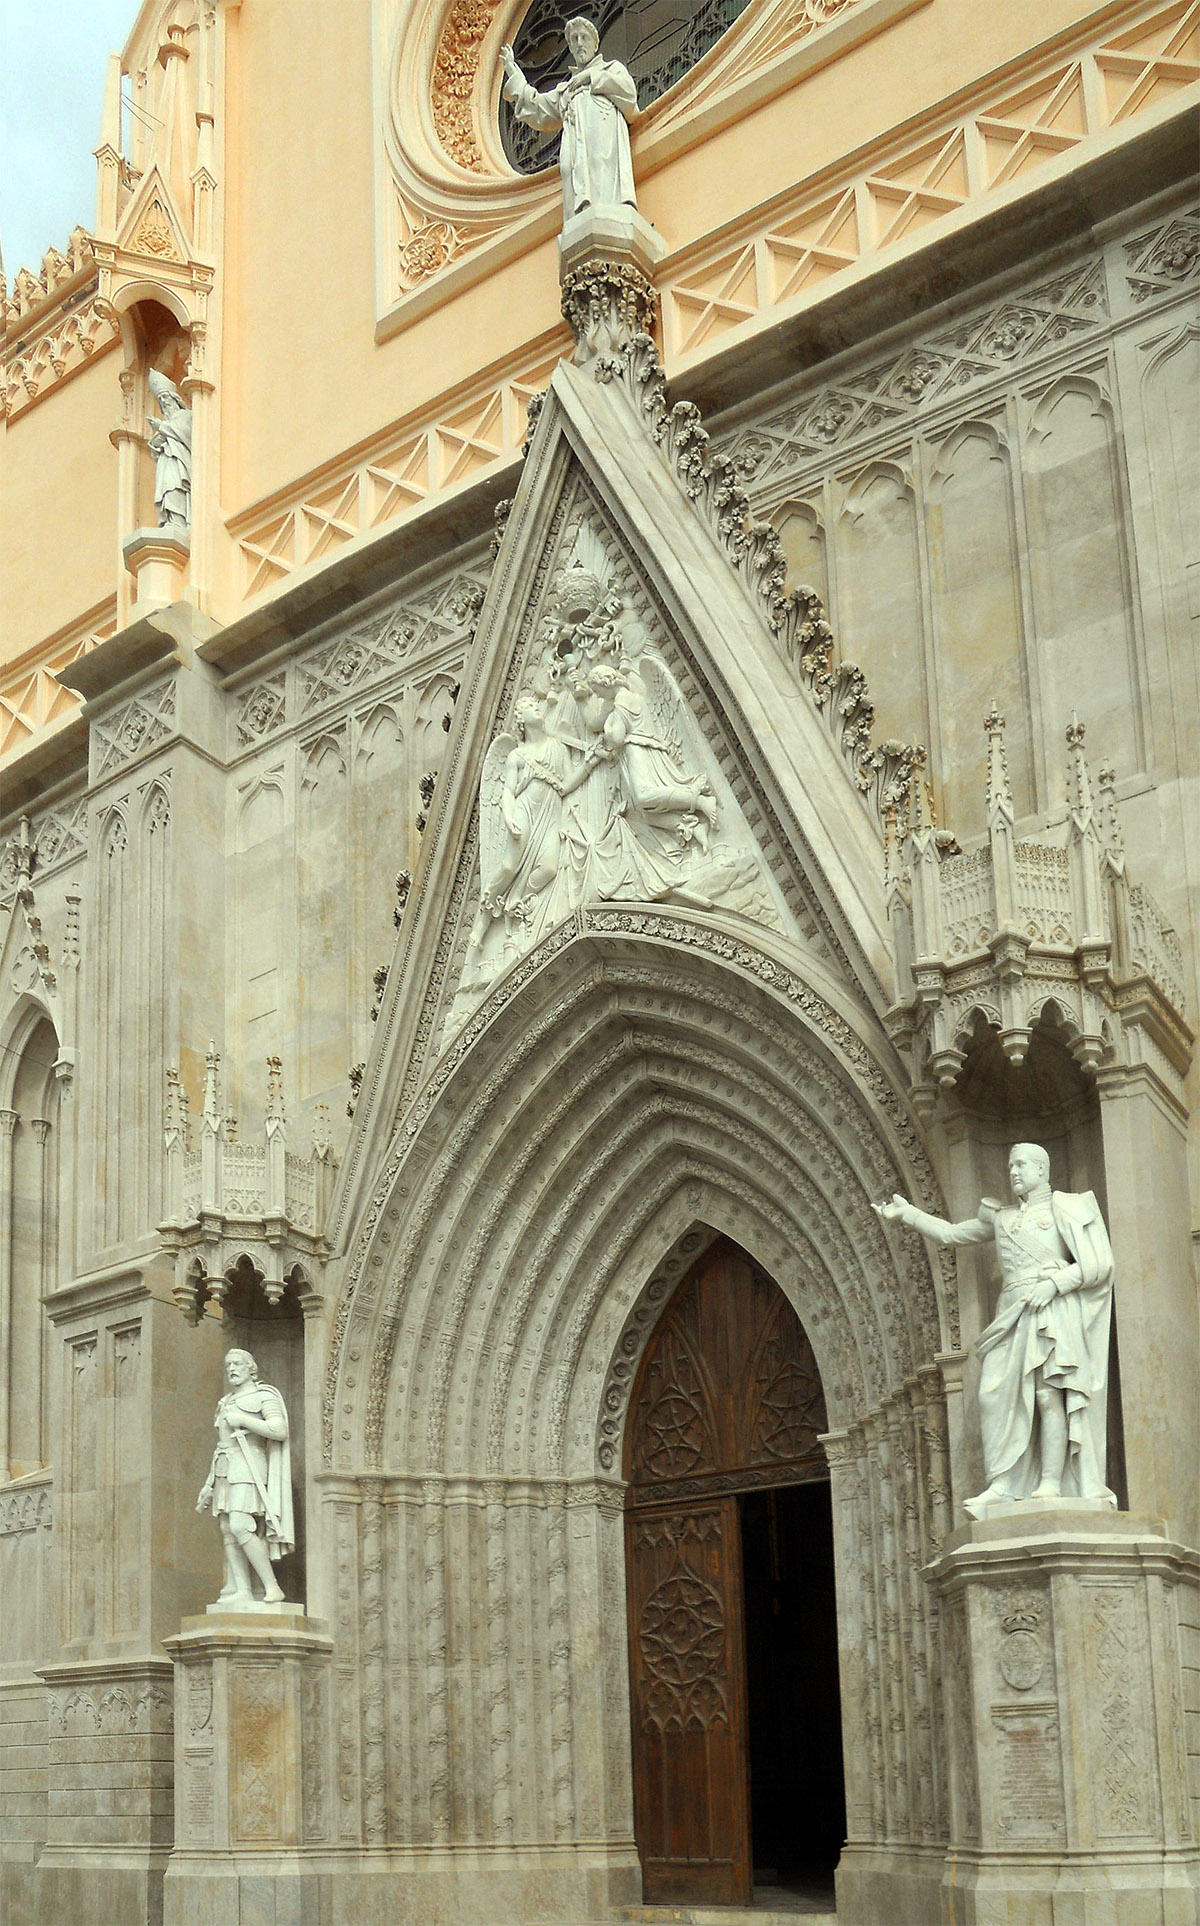 Façade of St. Francis' Church in Gaeta